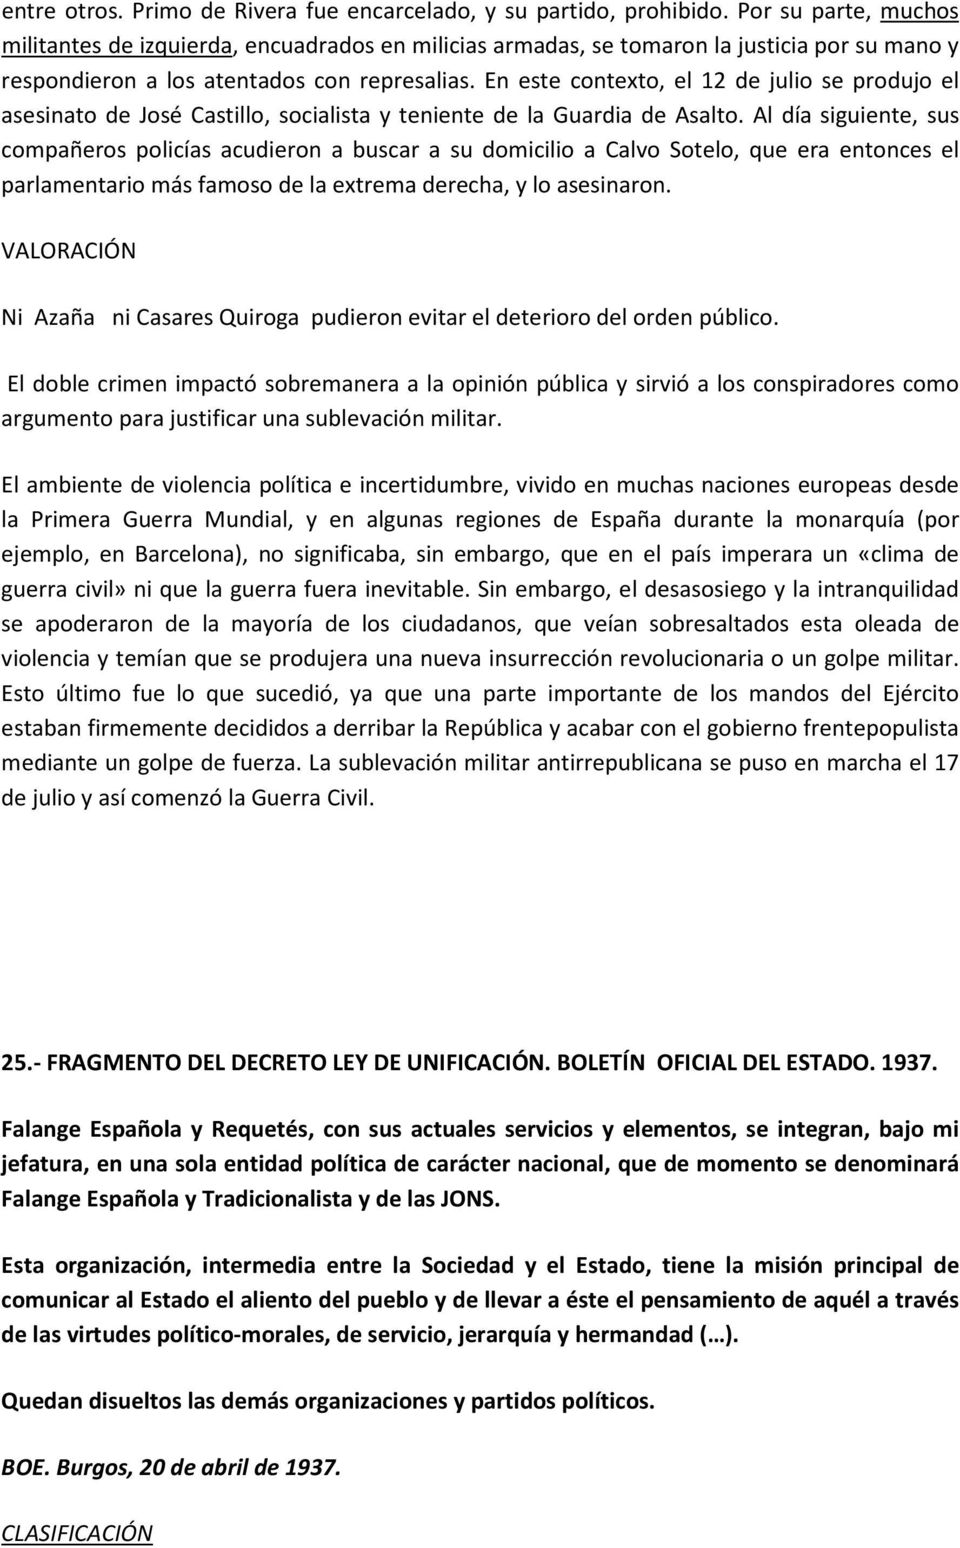 En este contexto, el 12 de julio se produjo el asesinato de José Castillo, socialista y teniente de la Guardia de Asalto.